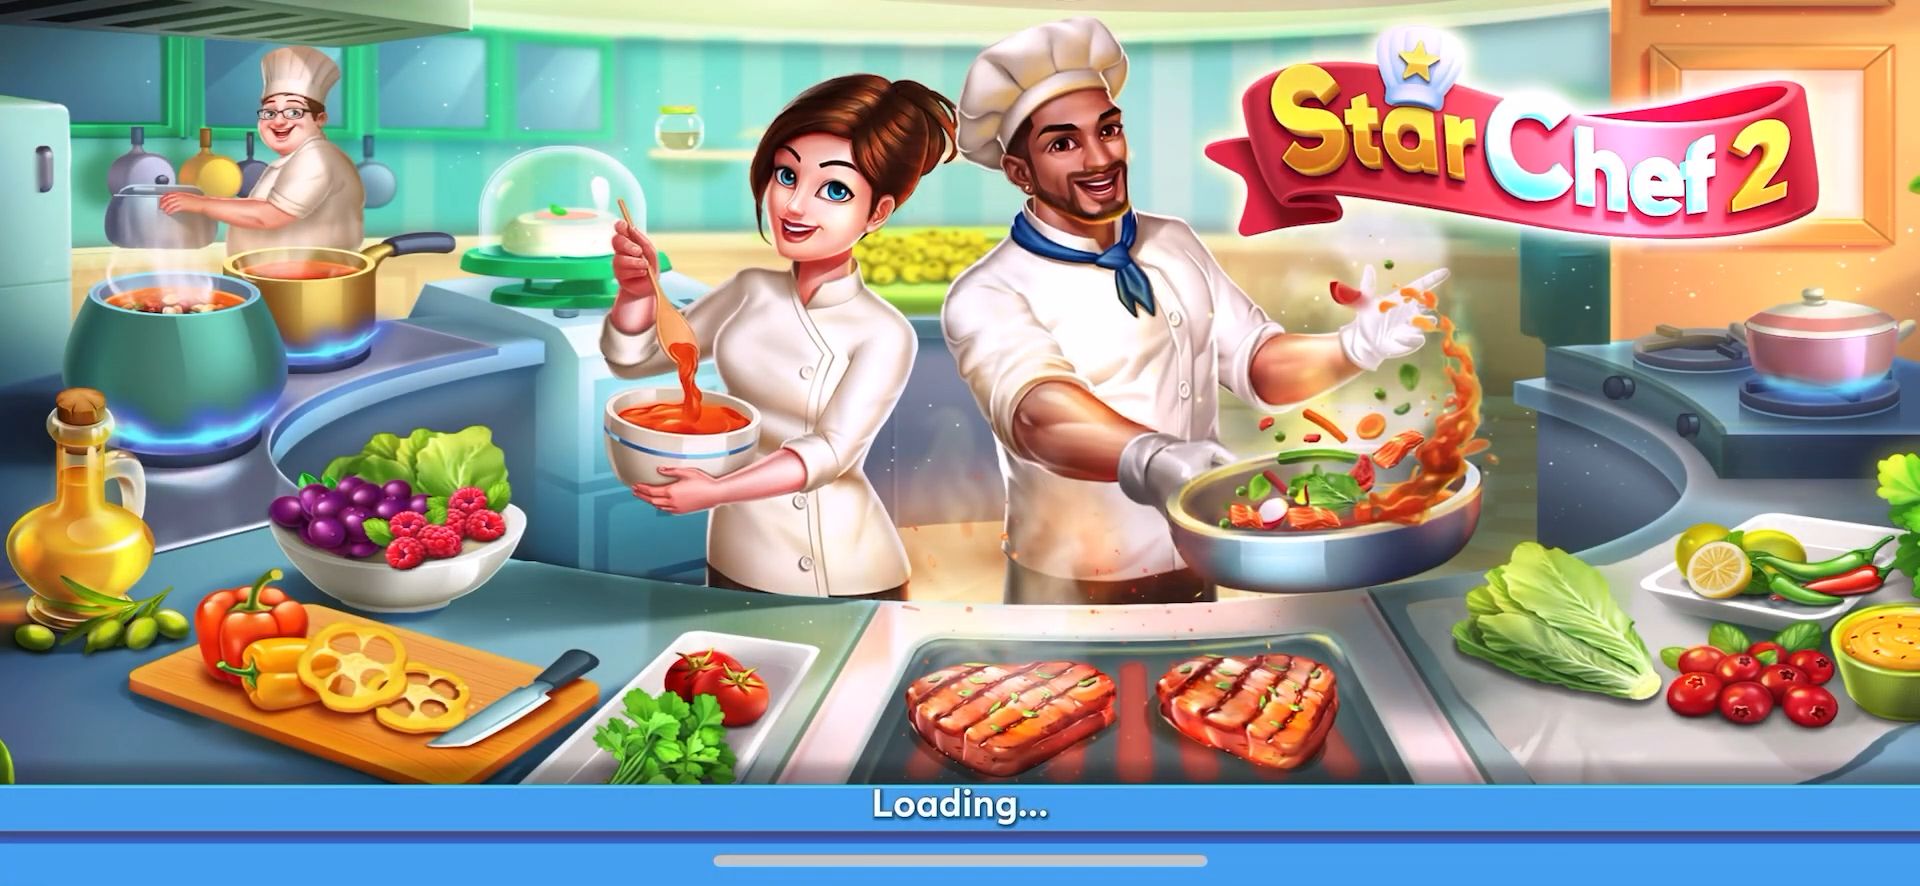 Download Tasty Cooking Cafe & Restaurant Game: Star Chef 2 für Android kostenlos.